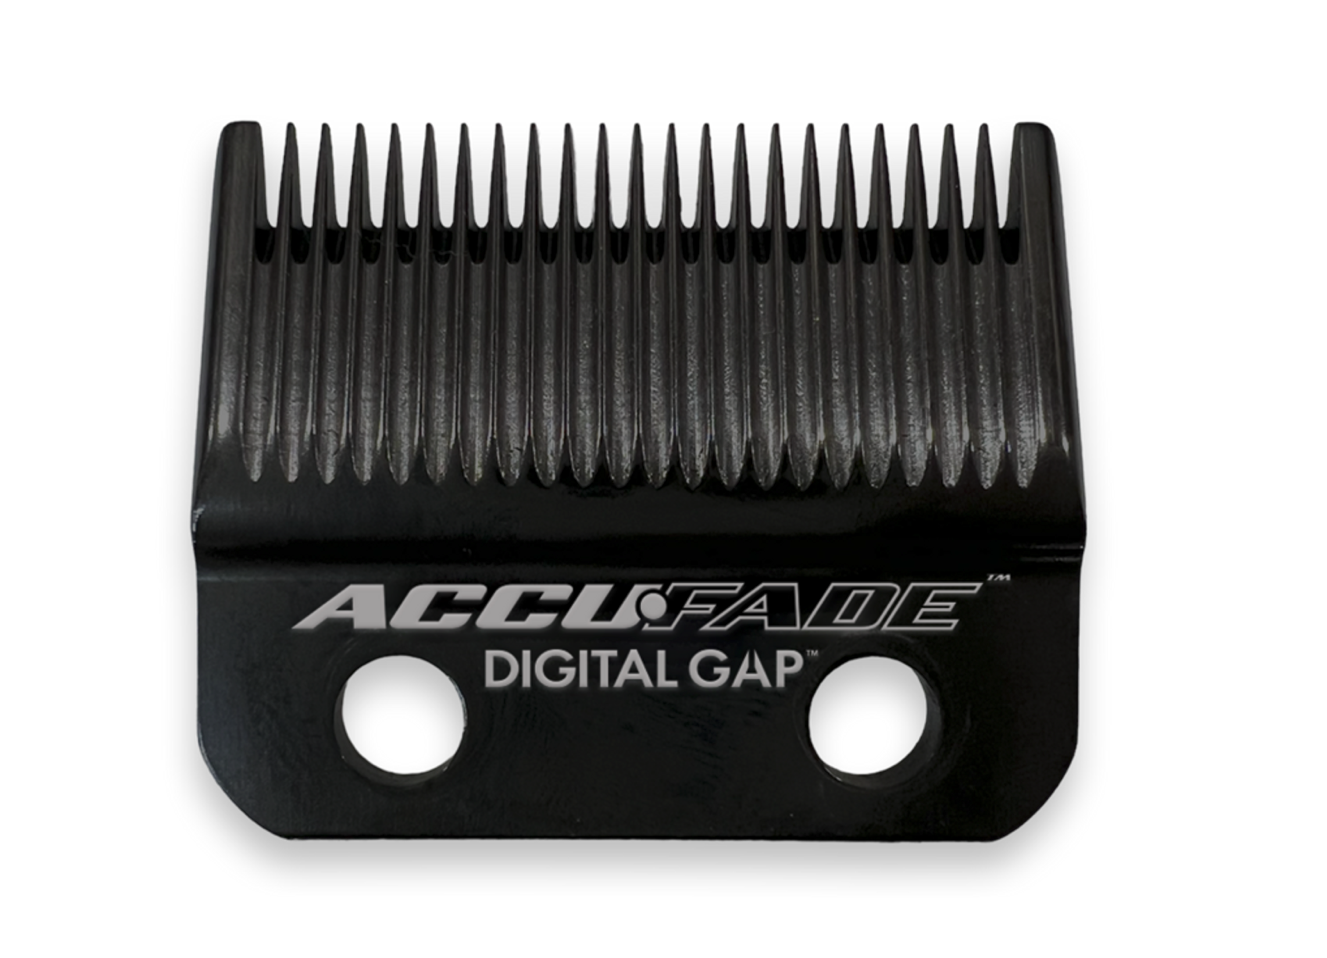 Cocco Digital Gap™ Accufade Graphene Fade Clipper Blade